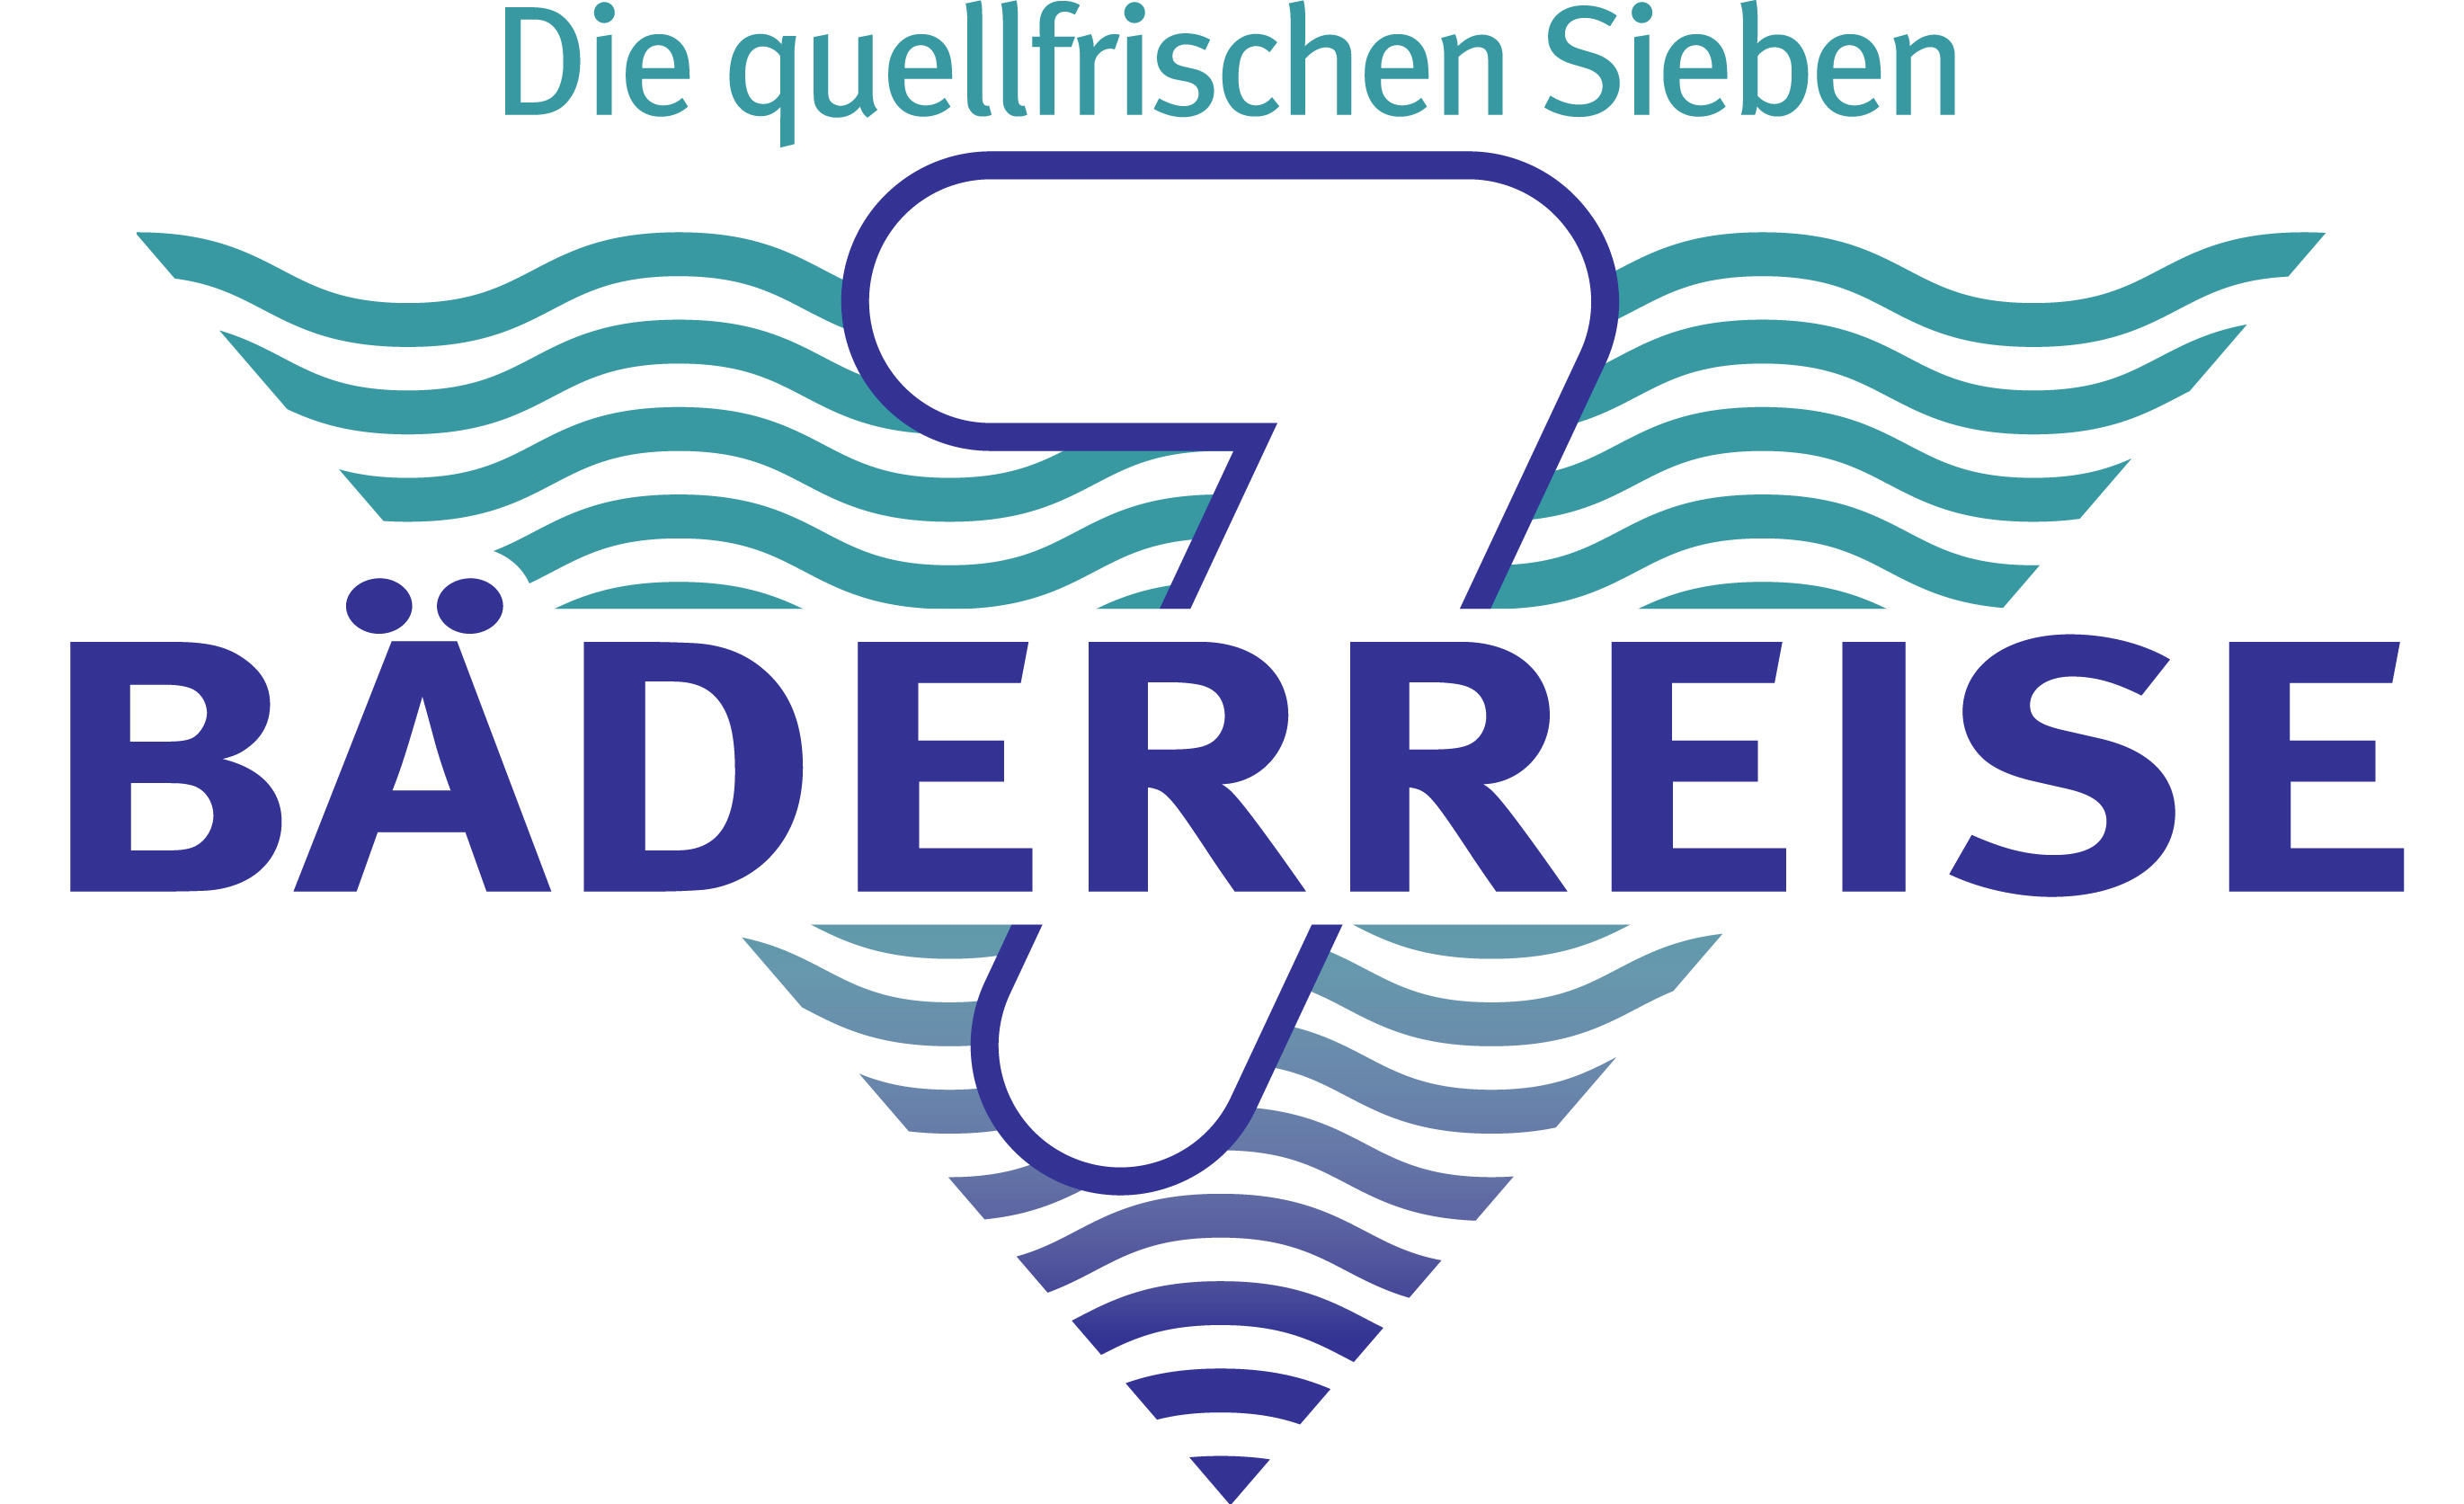 Das Logo der Bäderreise